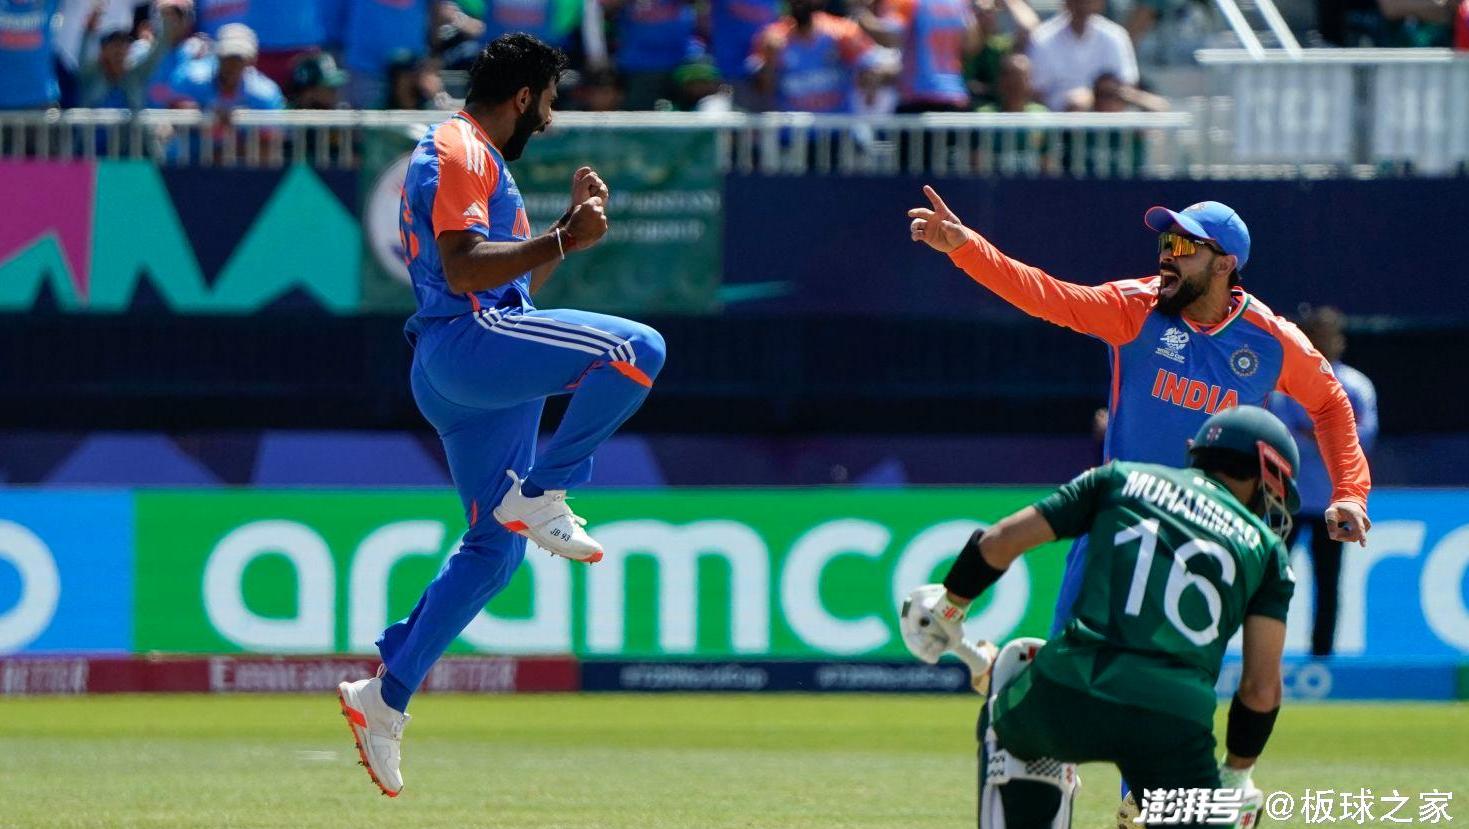 T20板球世界杯印度战胜巴基斯坦 看似简单还是疑云重重？